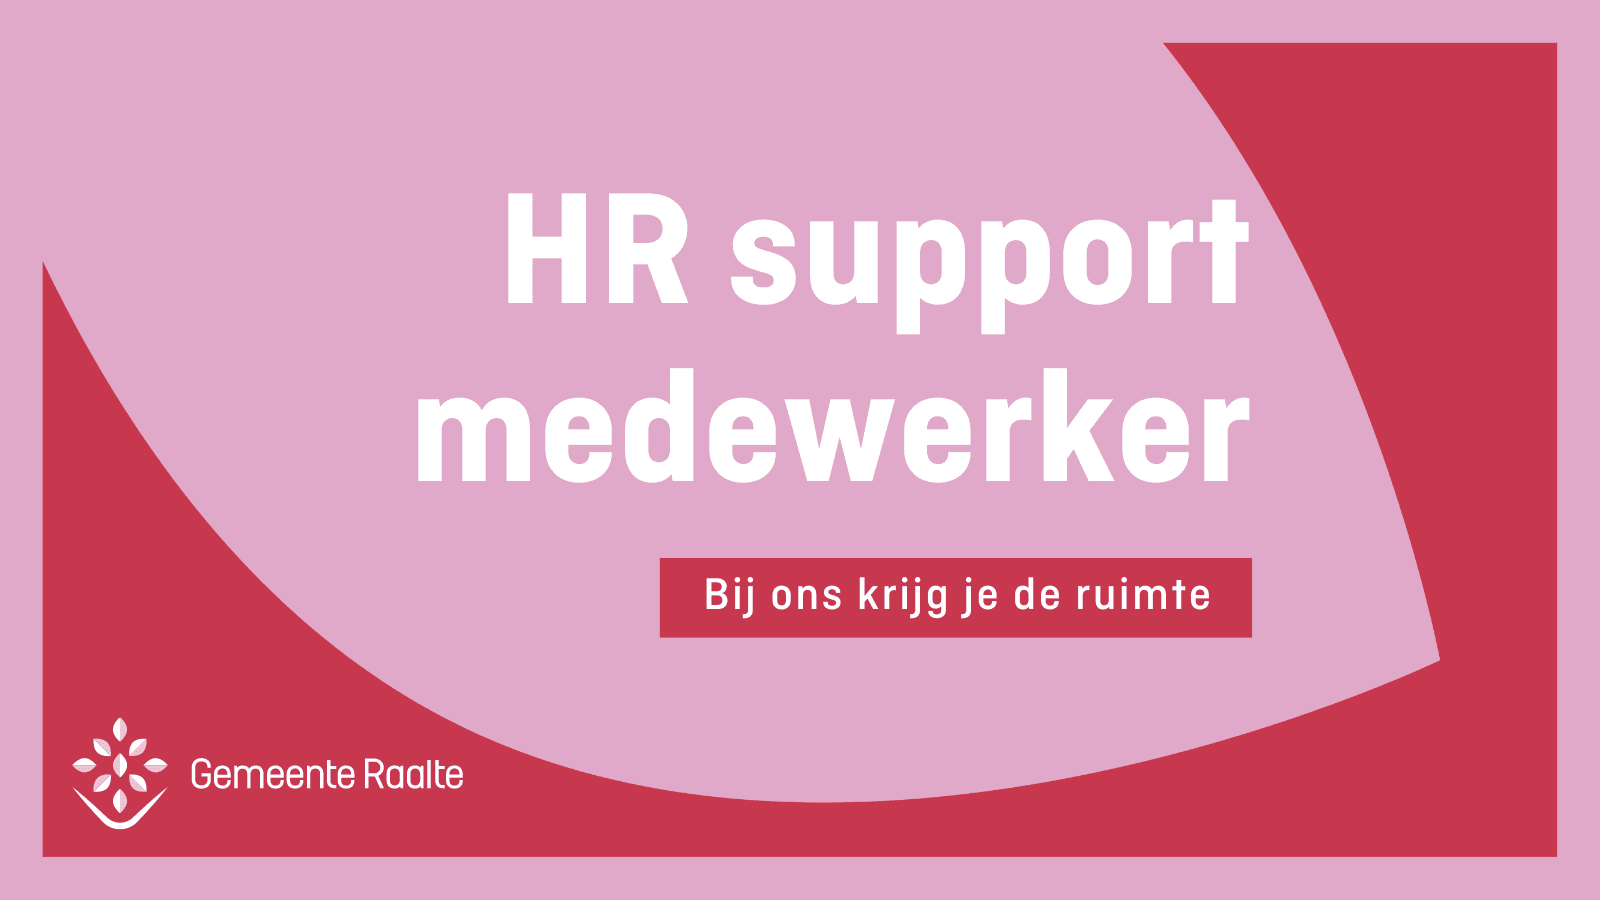 HR support medewerker